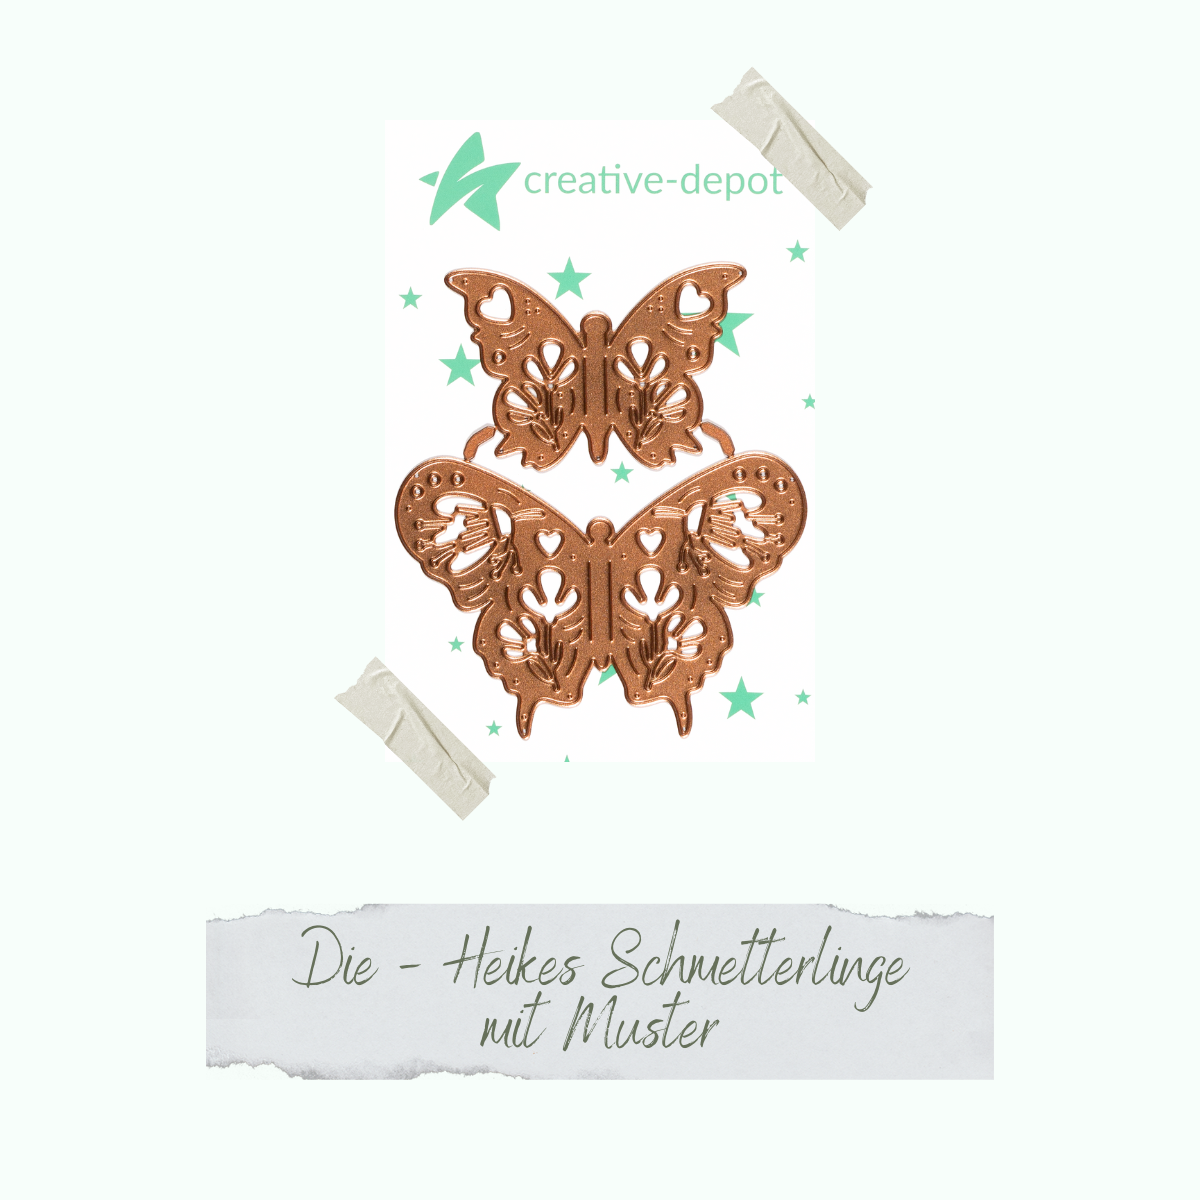 Die - Heikes Schmetterlinge mit Muster